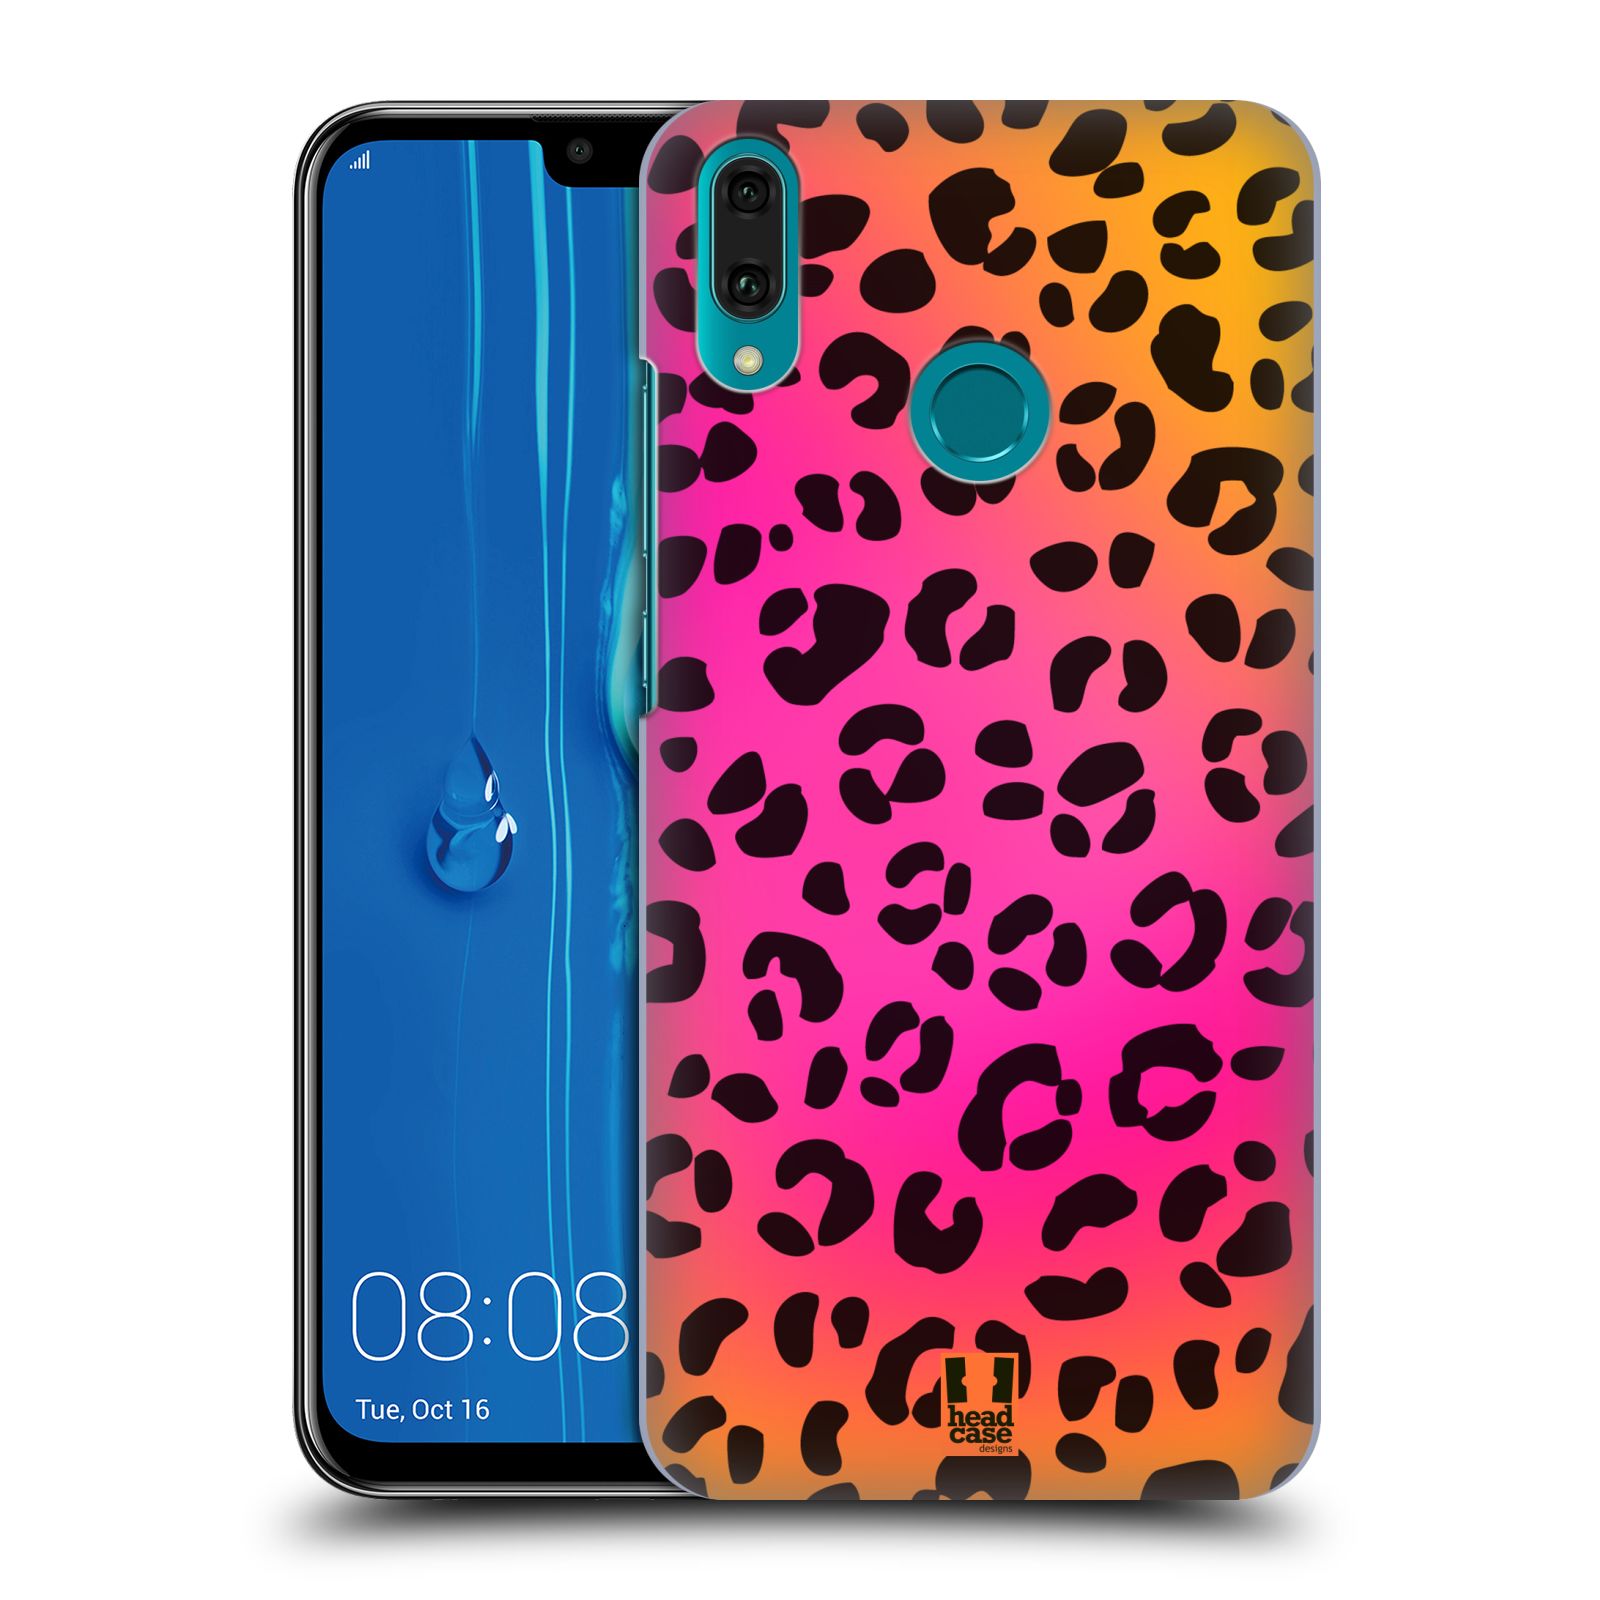 Pouzdro na mobil Huawei Y9 2019 - HEAD CASE - vzor Divočina zvíře růžový leopard